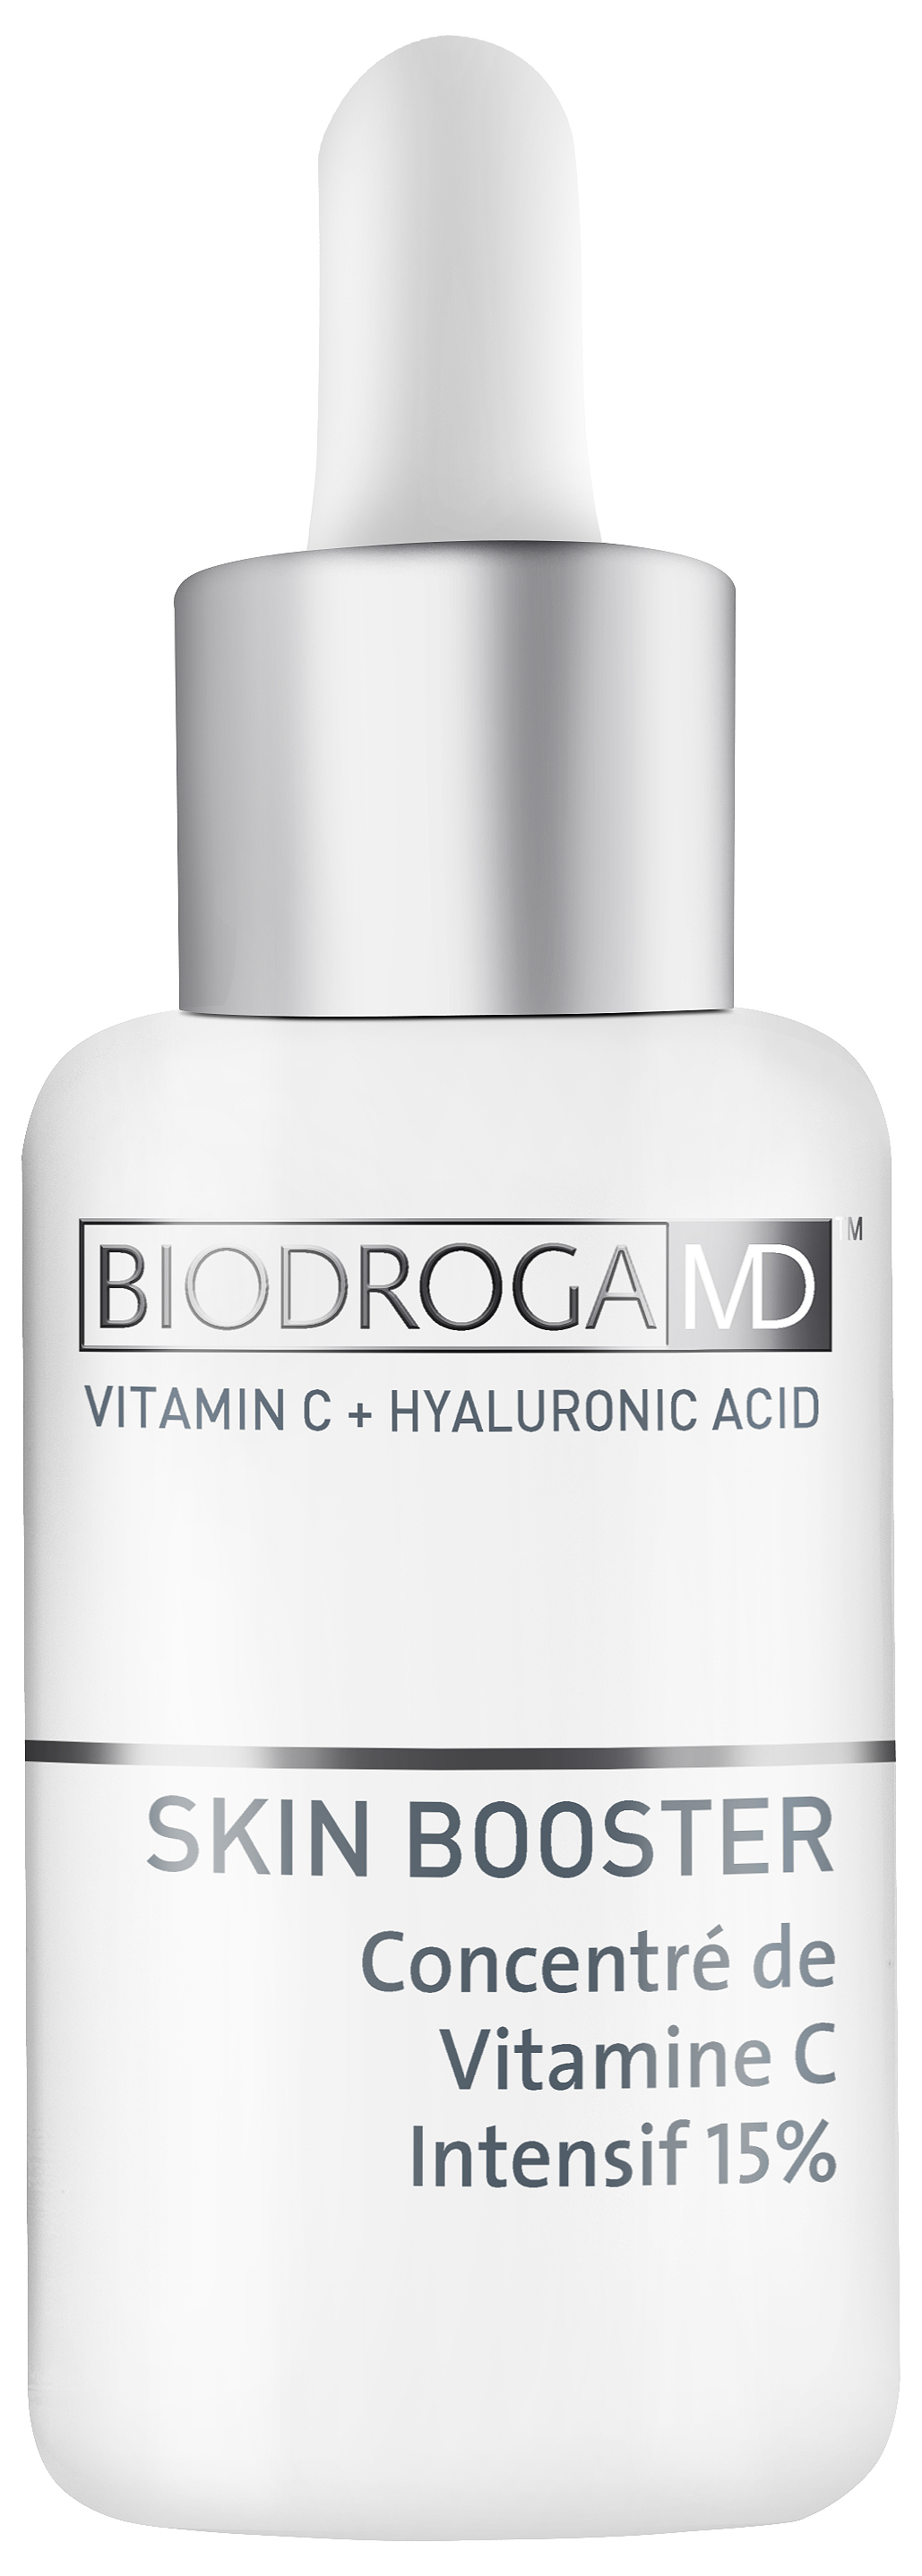 Biodroga MD Skin Booster Vitamin C Concentrate 15% 30 ml